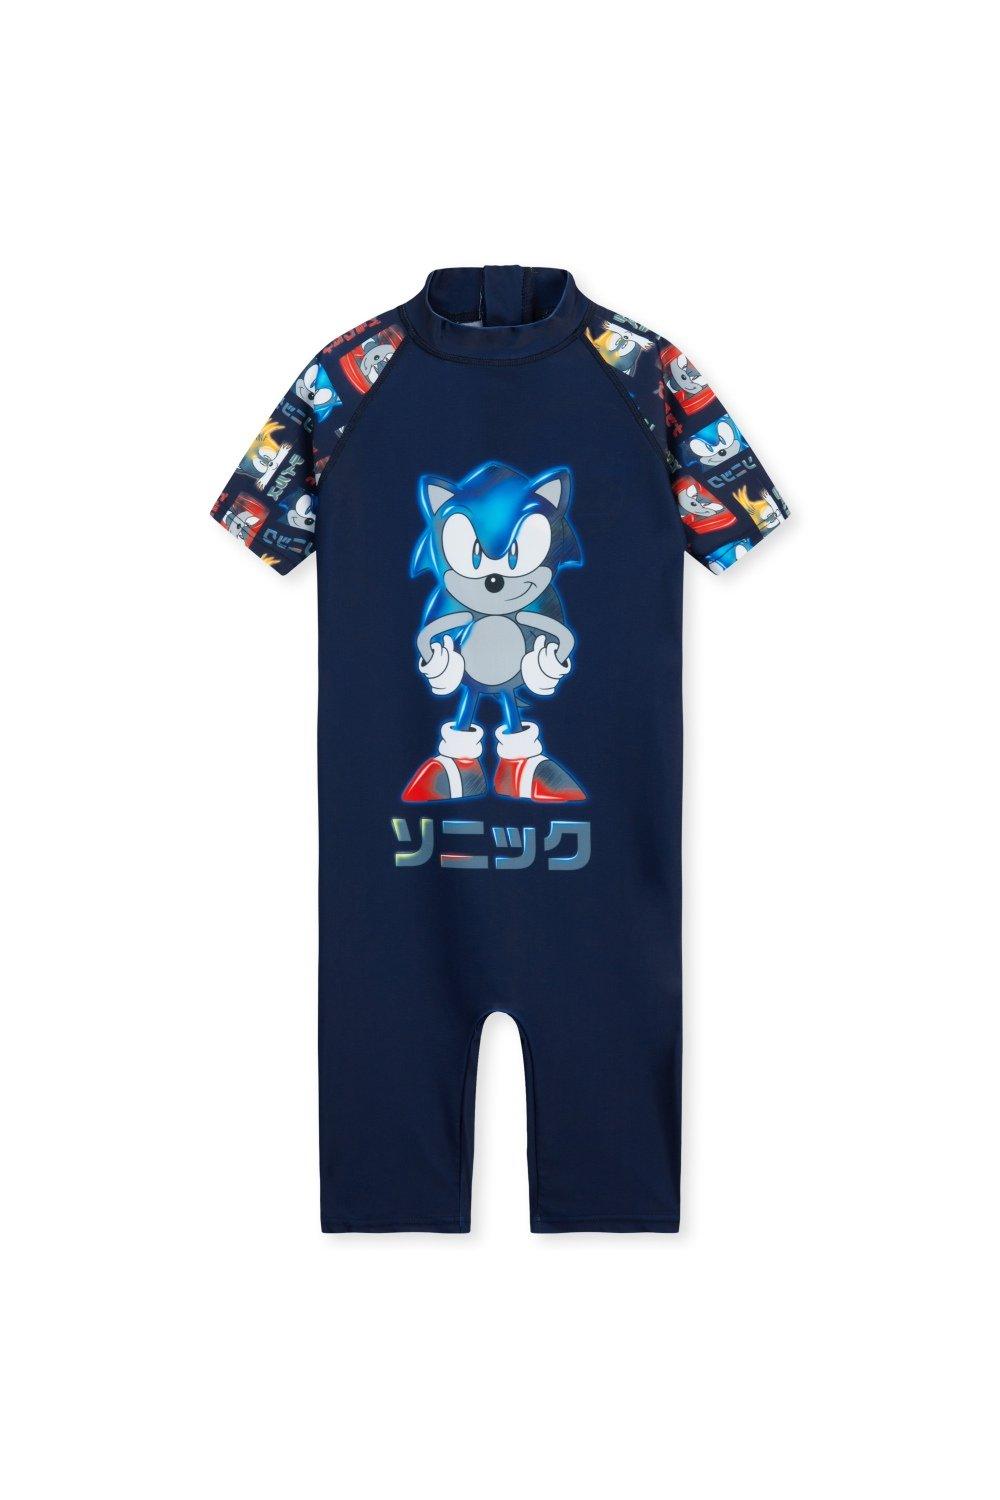 Цельный купальный костюм Купальник Sonic the Hedgehog, мультиколор upf50 детский купальник плавательный топ футболка купальный костюм для детей девочек мальчиков пляжные солнцезащитные рубашки с уф защит